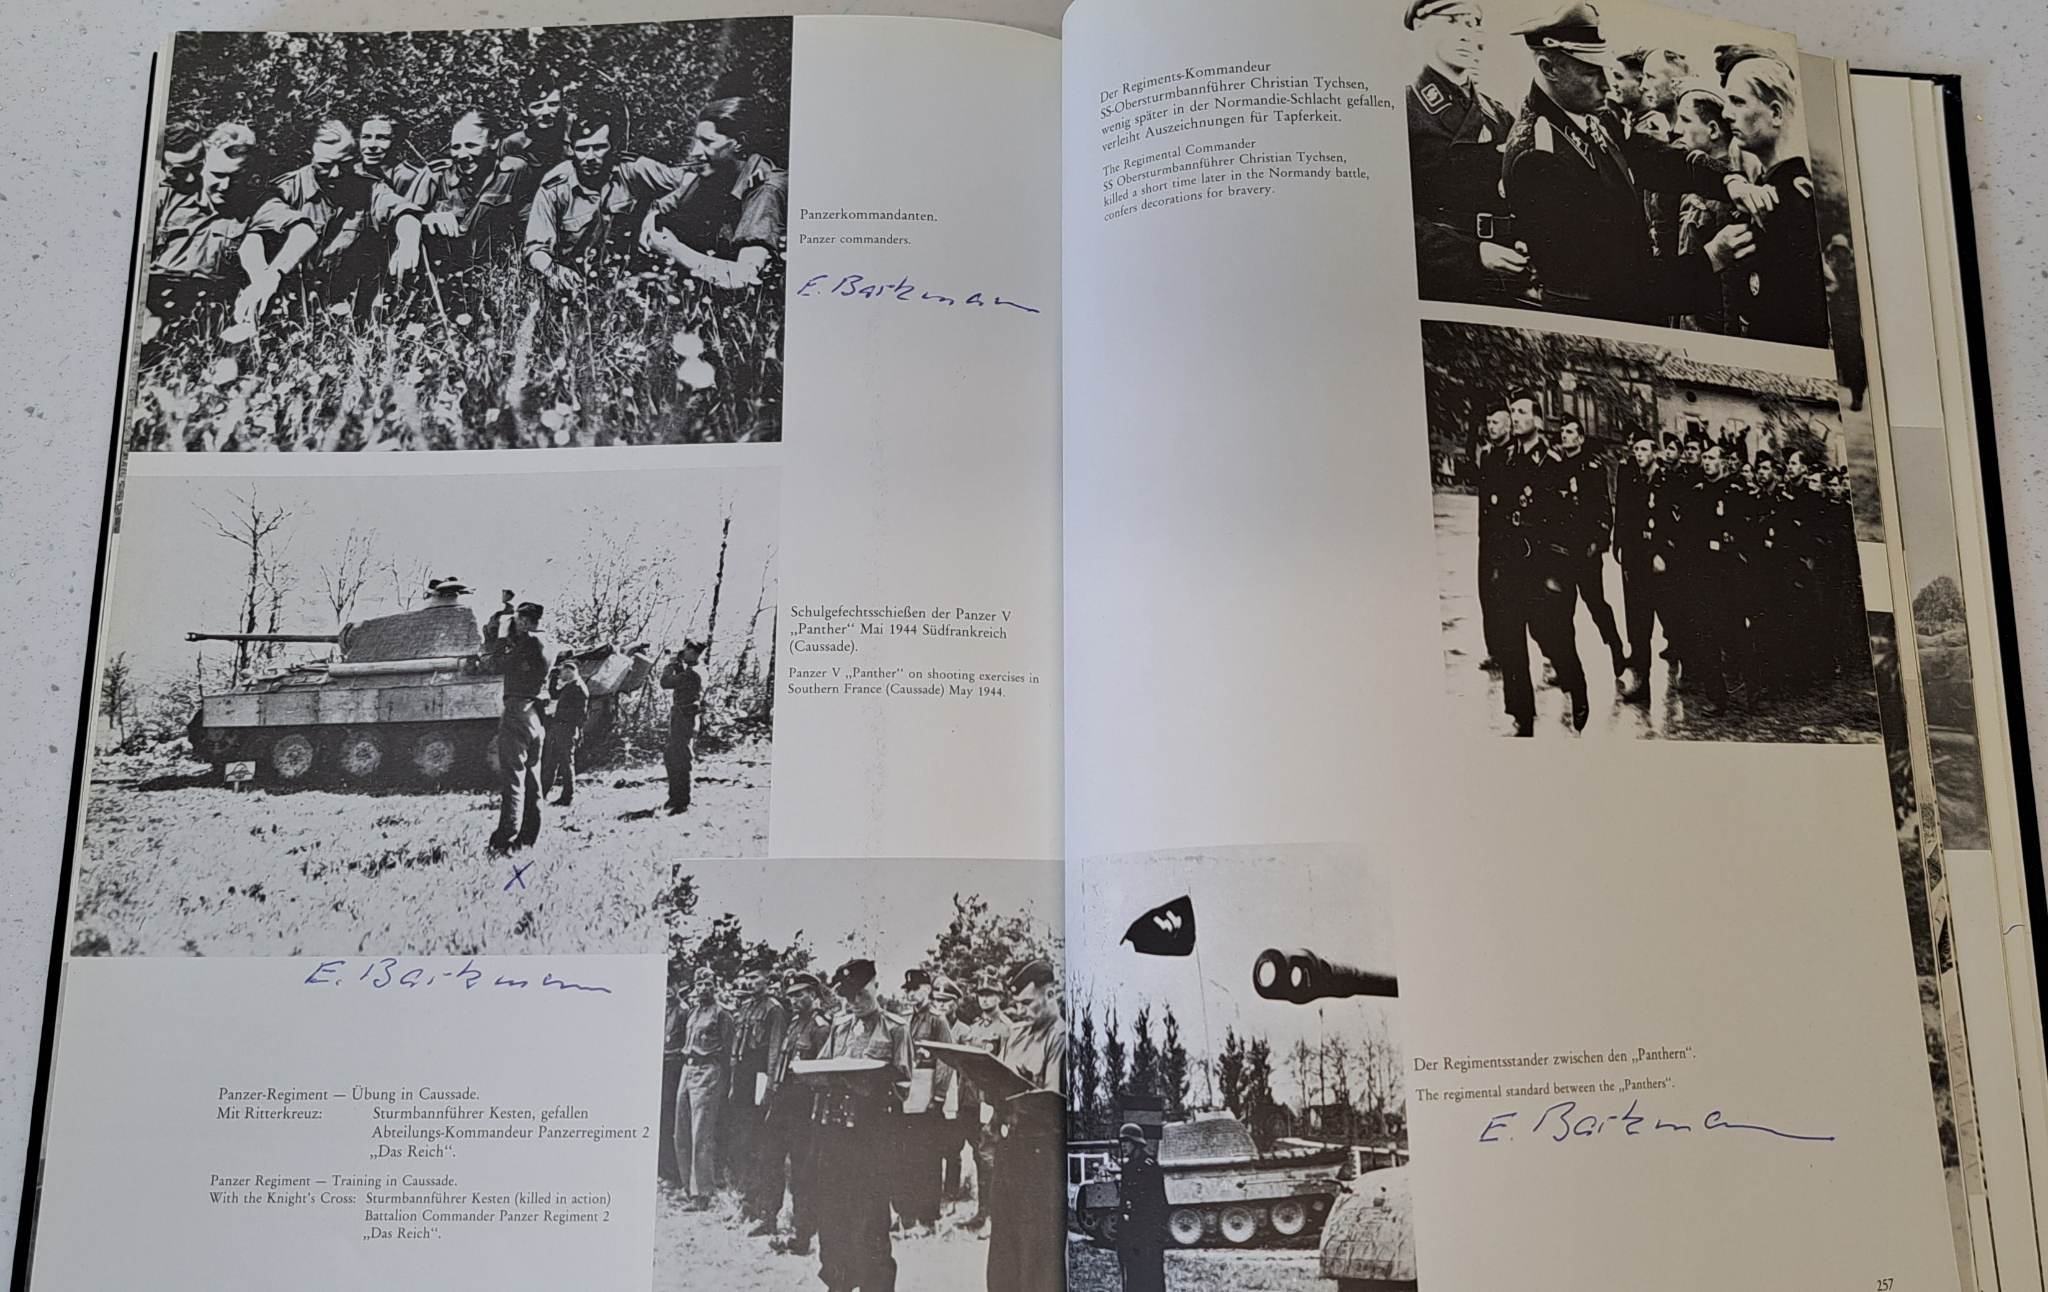 Das Reich im Bild - Waffen-SS Veteran Multi-signed book